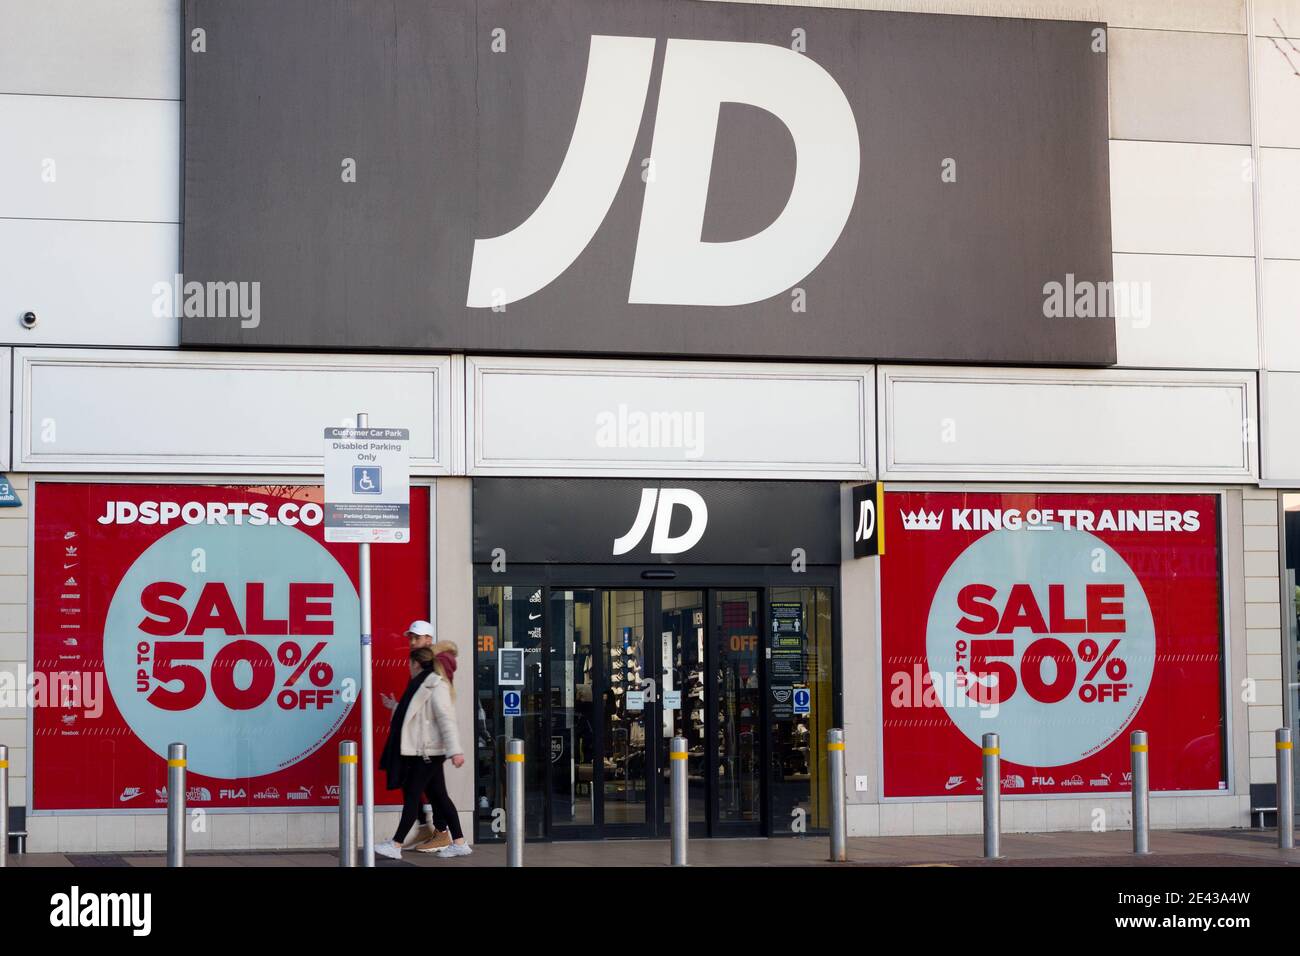 Femme et homme ont passé la boutique de sport JD offrant 50% Hors vente, Londres Banque D'Images